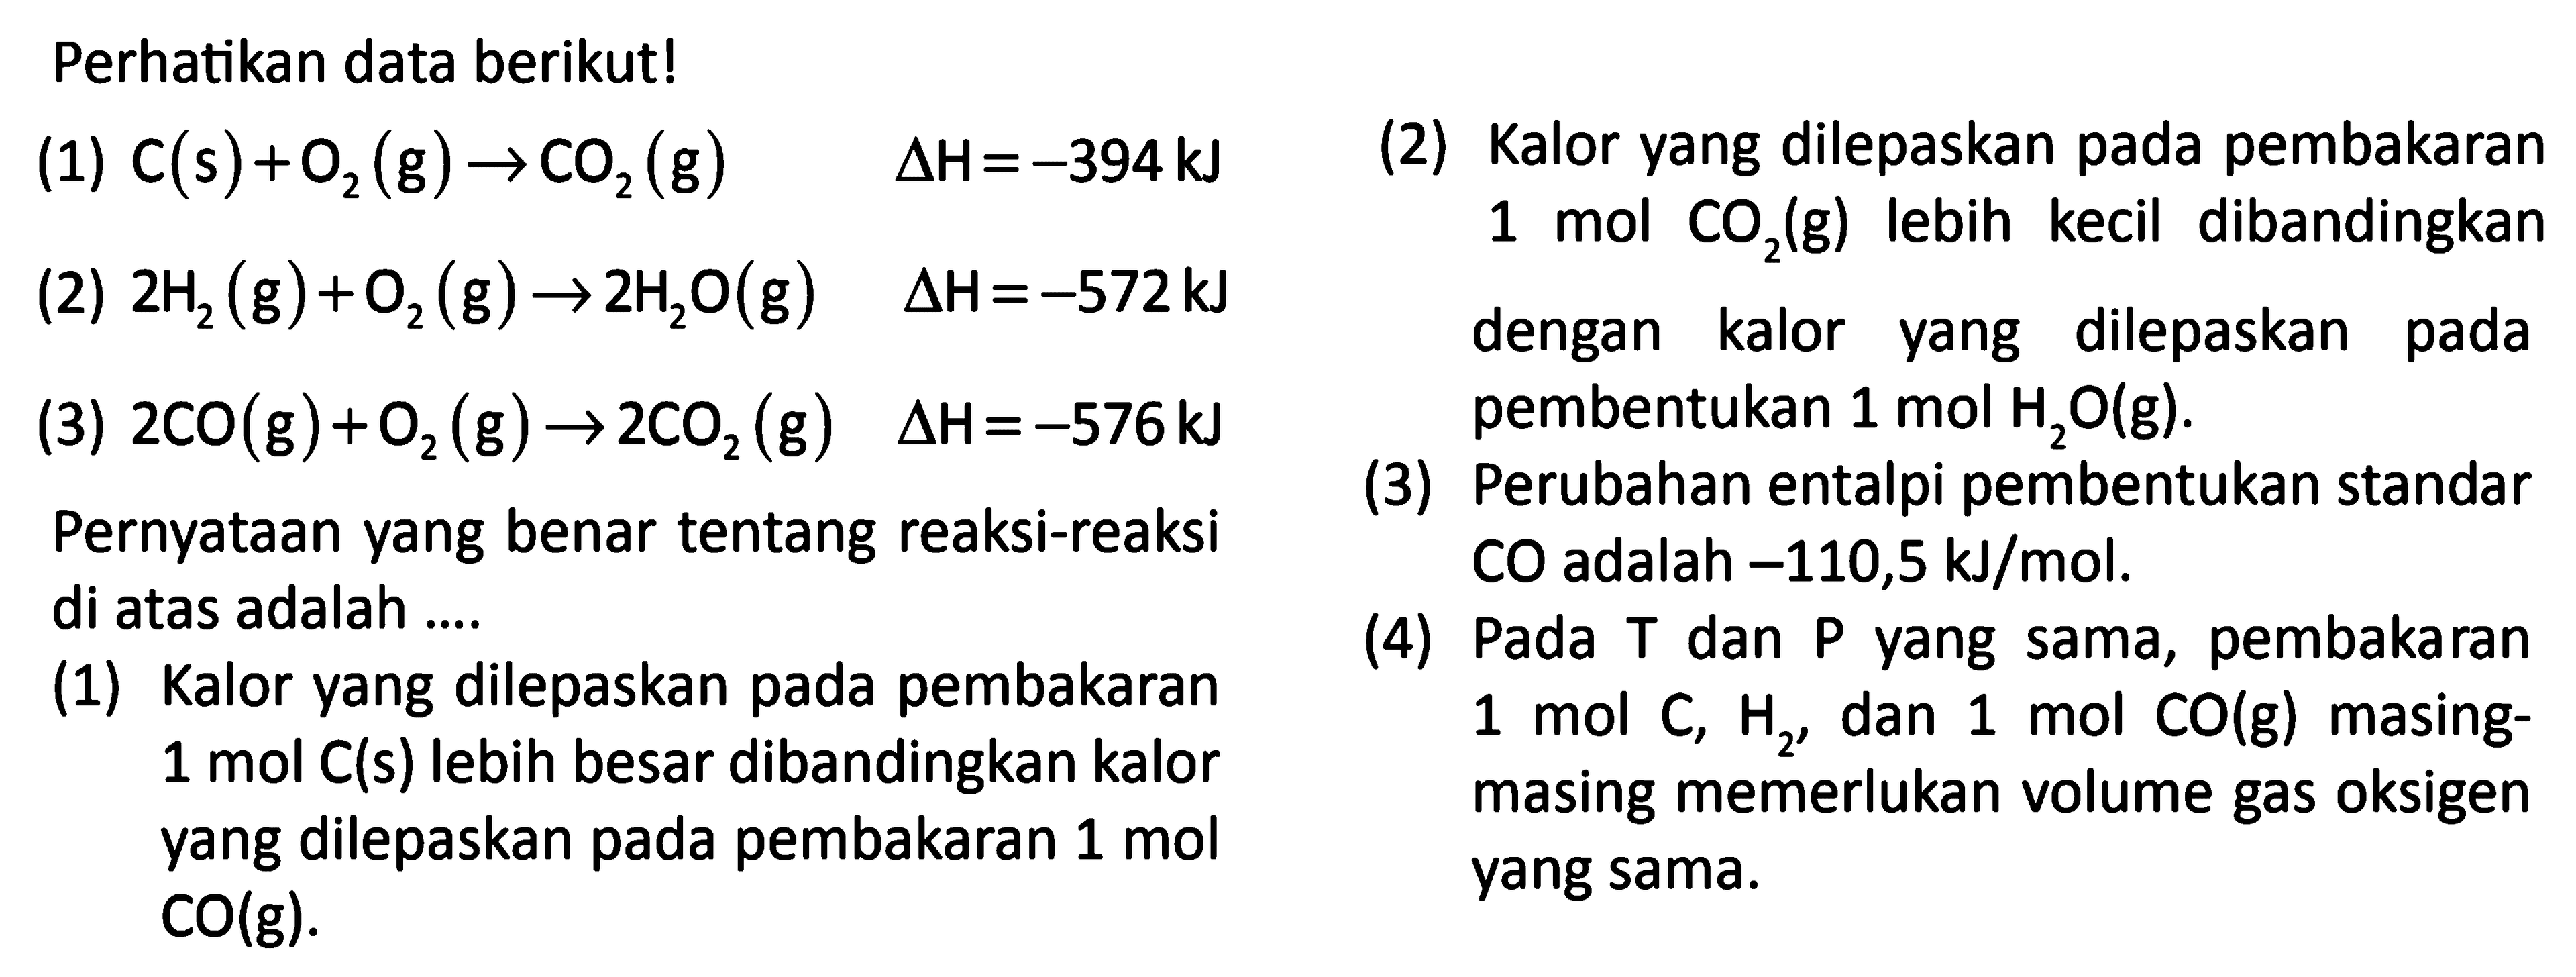 Perhatikan data berikut! (1) C (s) + O2 (g) -> CO2 (g) delta H= -394 kJ (2) 2 H2 (g) + O2 (g) -> 2 H2O (g) delta H=-572 kJ (3) 2 CO (g)+ O2 (g) -> 2 CO2 (g) delta H=-576 kJ 
Pernyataan yang benar tentang reaksi-reaksi  di atas adalah  
(1) Kalor vang dilepaskan pada pembakaran 1 mol C (s) lebih besar dibandingkan kalor yang dilepaskan pada pembakaran 1 mol CO(g).
(2) Kalor yang dilepaskan pada pembakaran 1 mol CO2(g) lebih kecil dibandingkan dengan kalor dilepaskan pada yang pembentukan 1 mol H2O (g) 
(3) Perubahan entalpi pembentukan standar CO adalah -110,5 kJ/mol. 
(4) Pada T dan P yang sama, pembakaran mol C, H2, dan 1 mol CO (g) masing-masing memerlukan volume gas oksigen yang sama. 